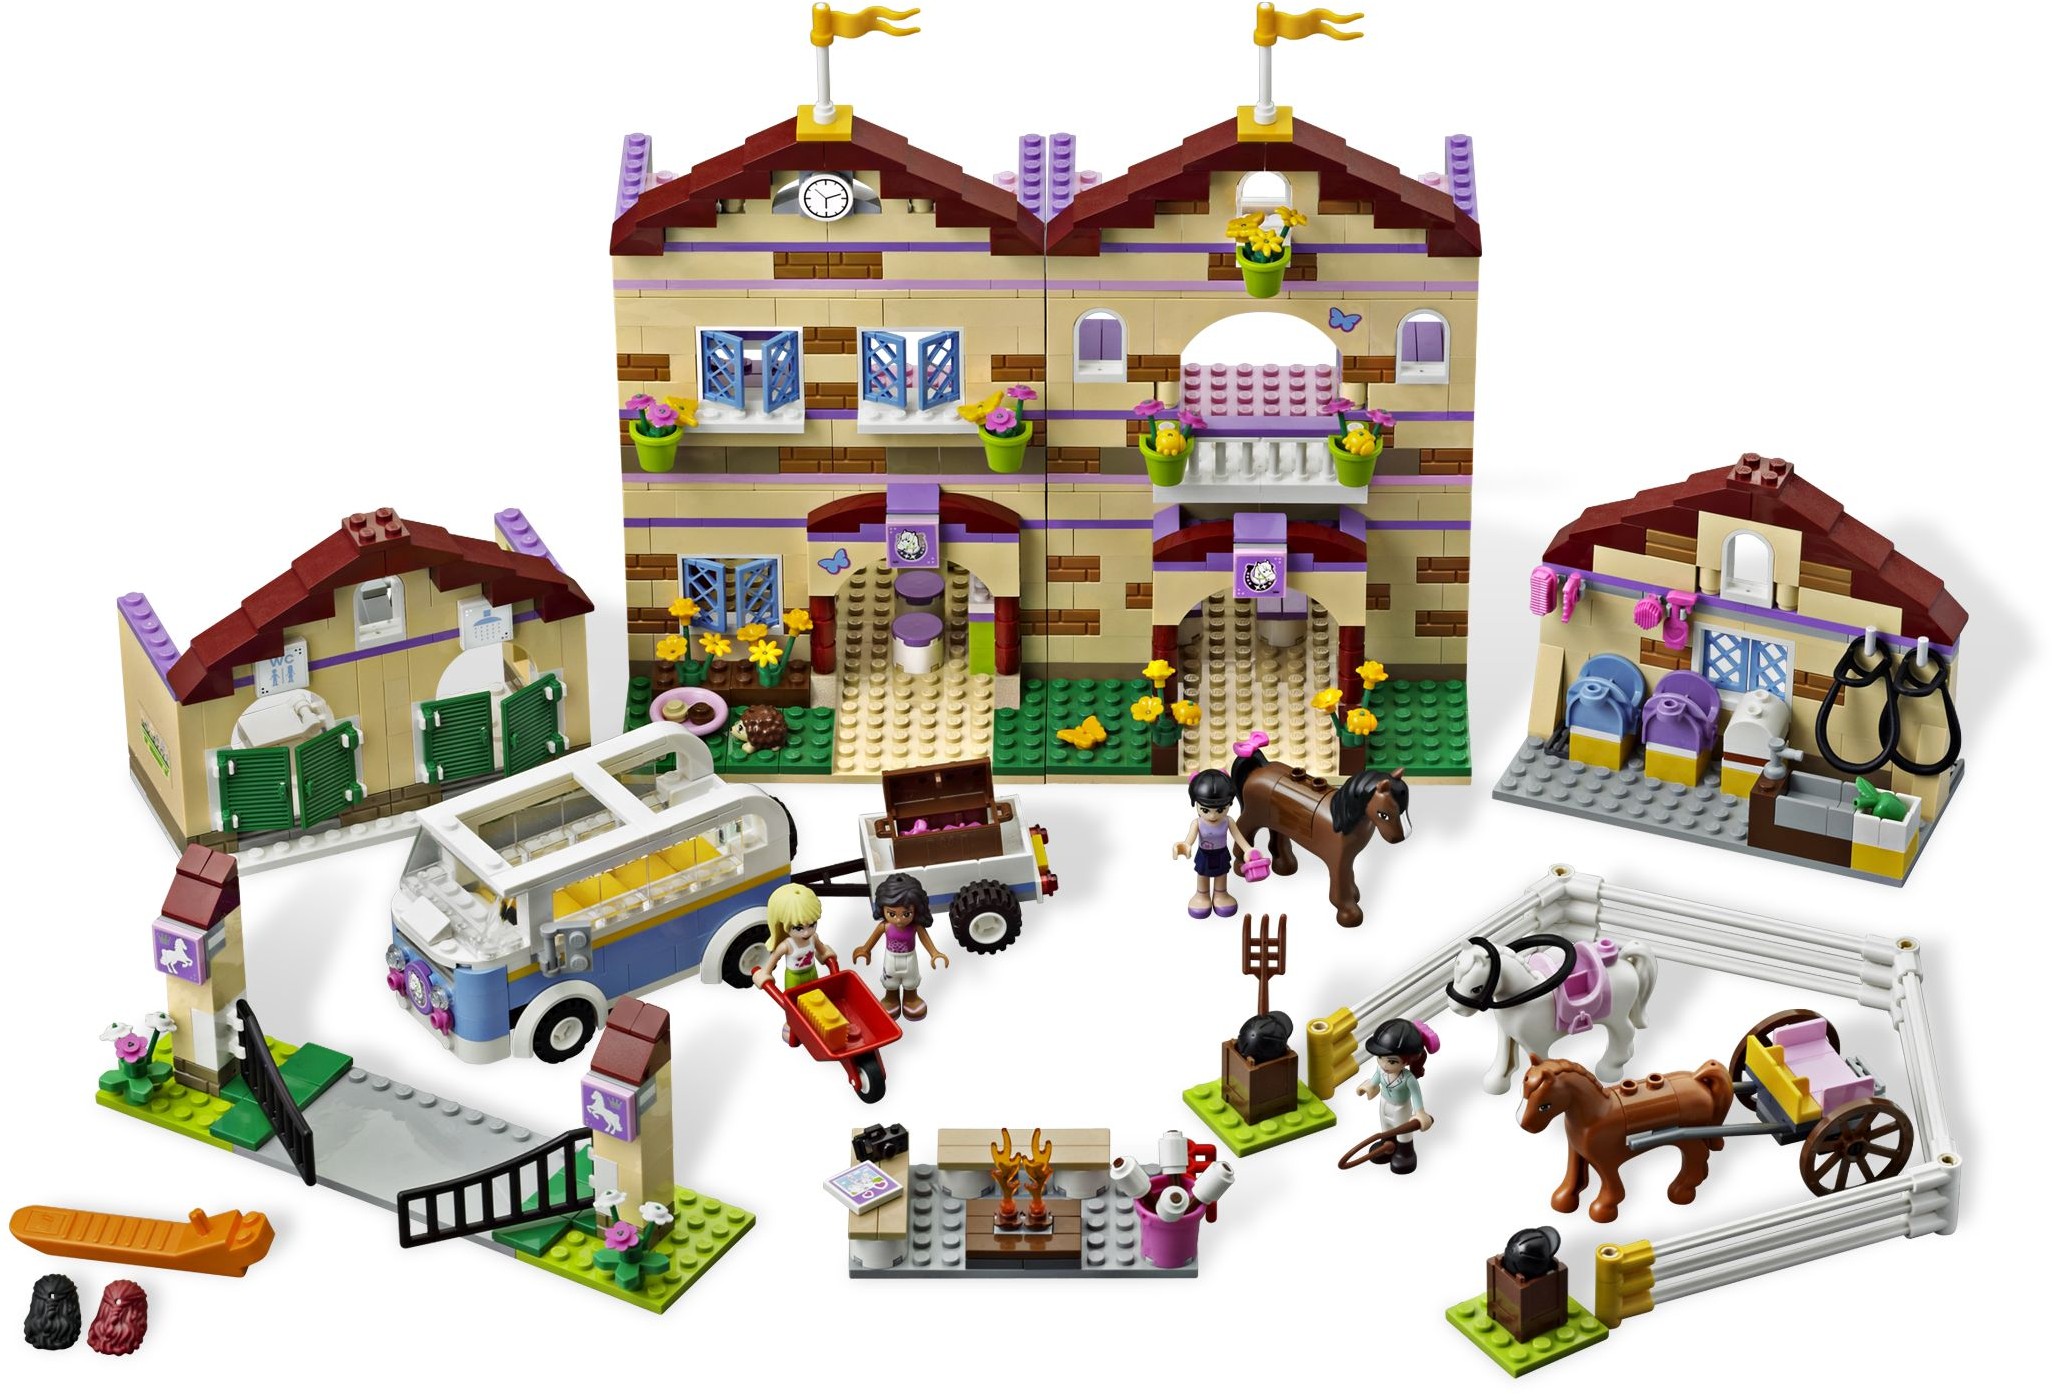 Perfekt Afsnit vedholdende LEGO Friends | Brickset